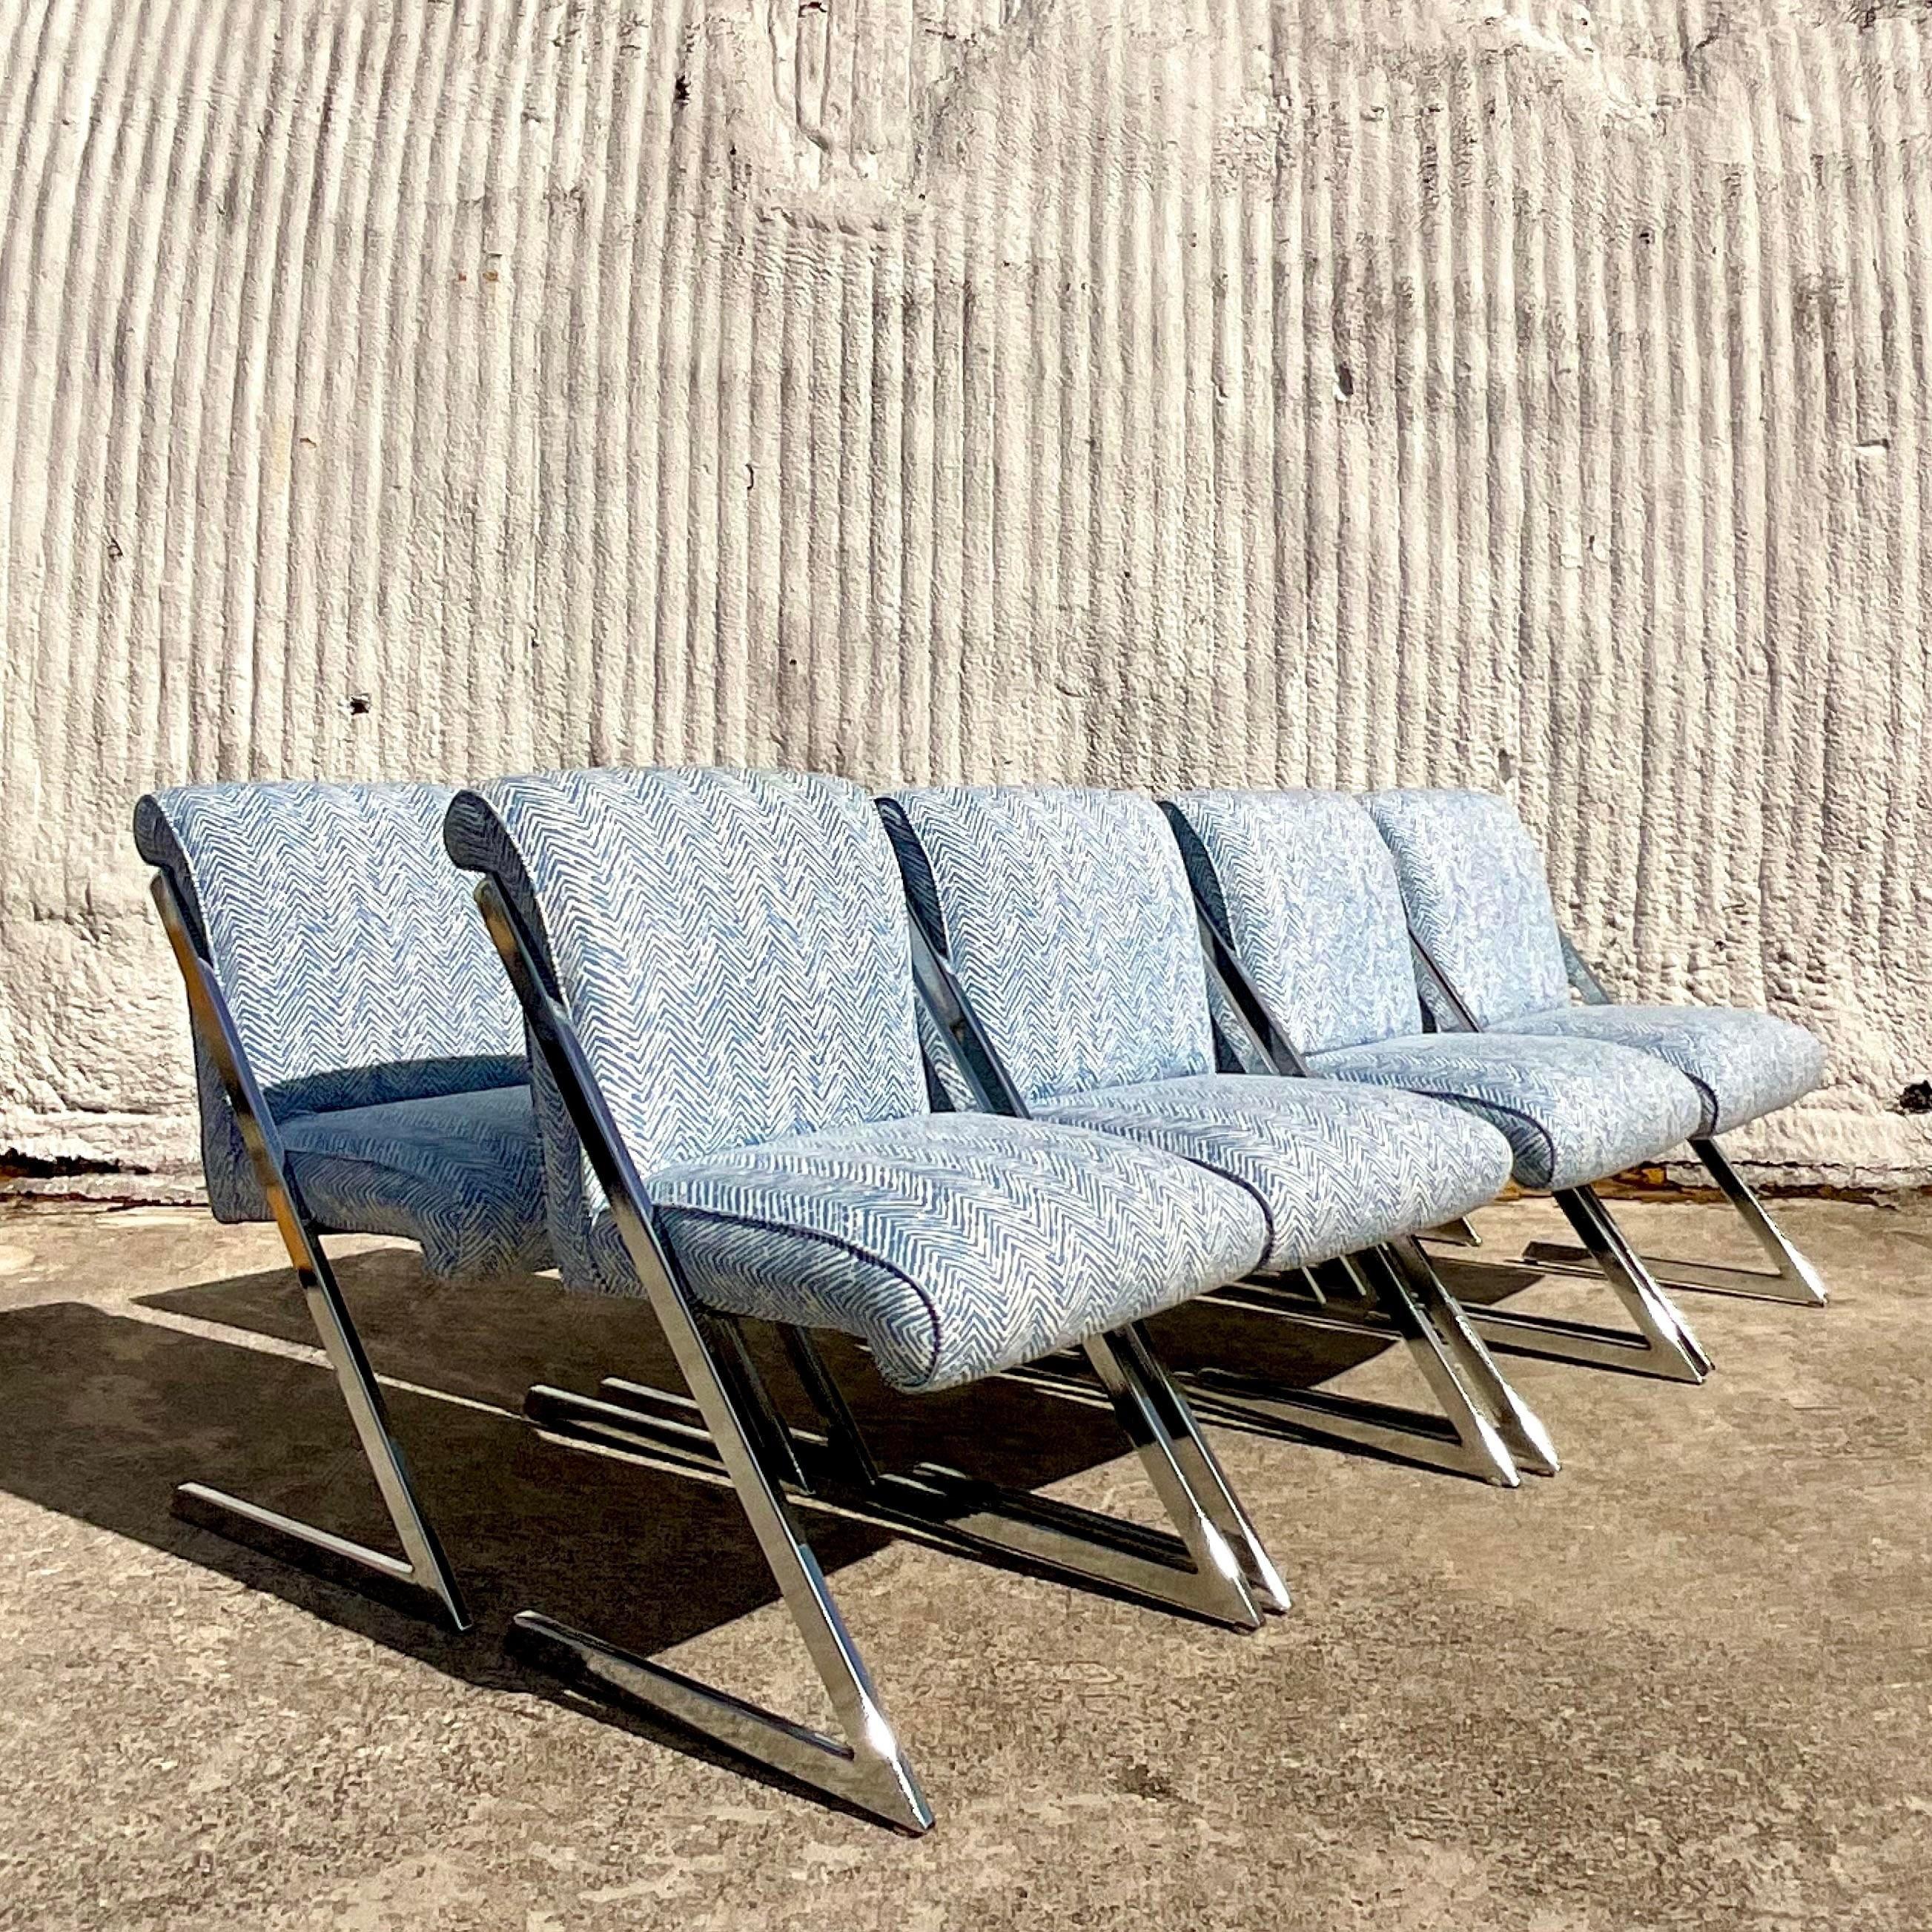 Un ensemble spectaculaire de chaises de salle à manger vintage Boho pristine. L'emblématique chaise Z en chrome poli à la manière de Milo Baughman. Fraîchement retapissé dans le tissu de la collection Tweed de Meg Braff en bleu moyen. Acquis d'une